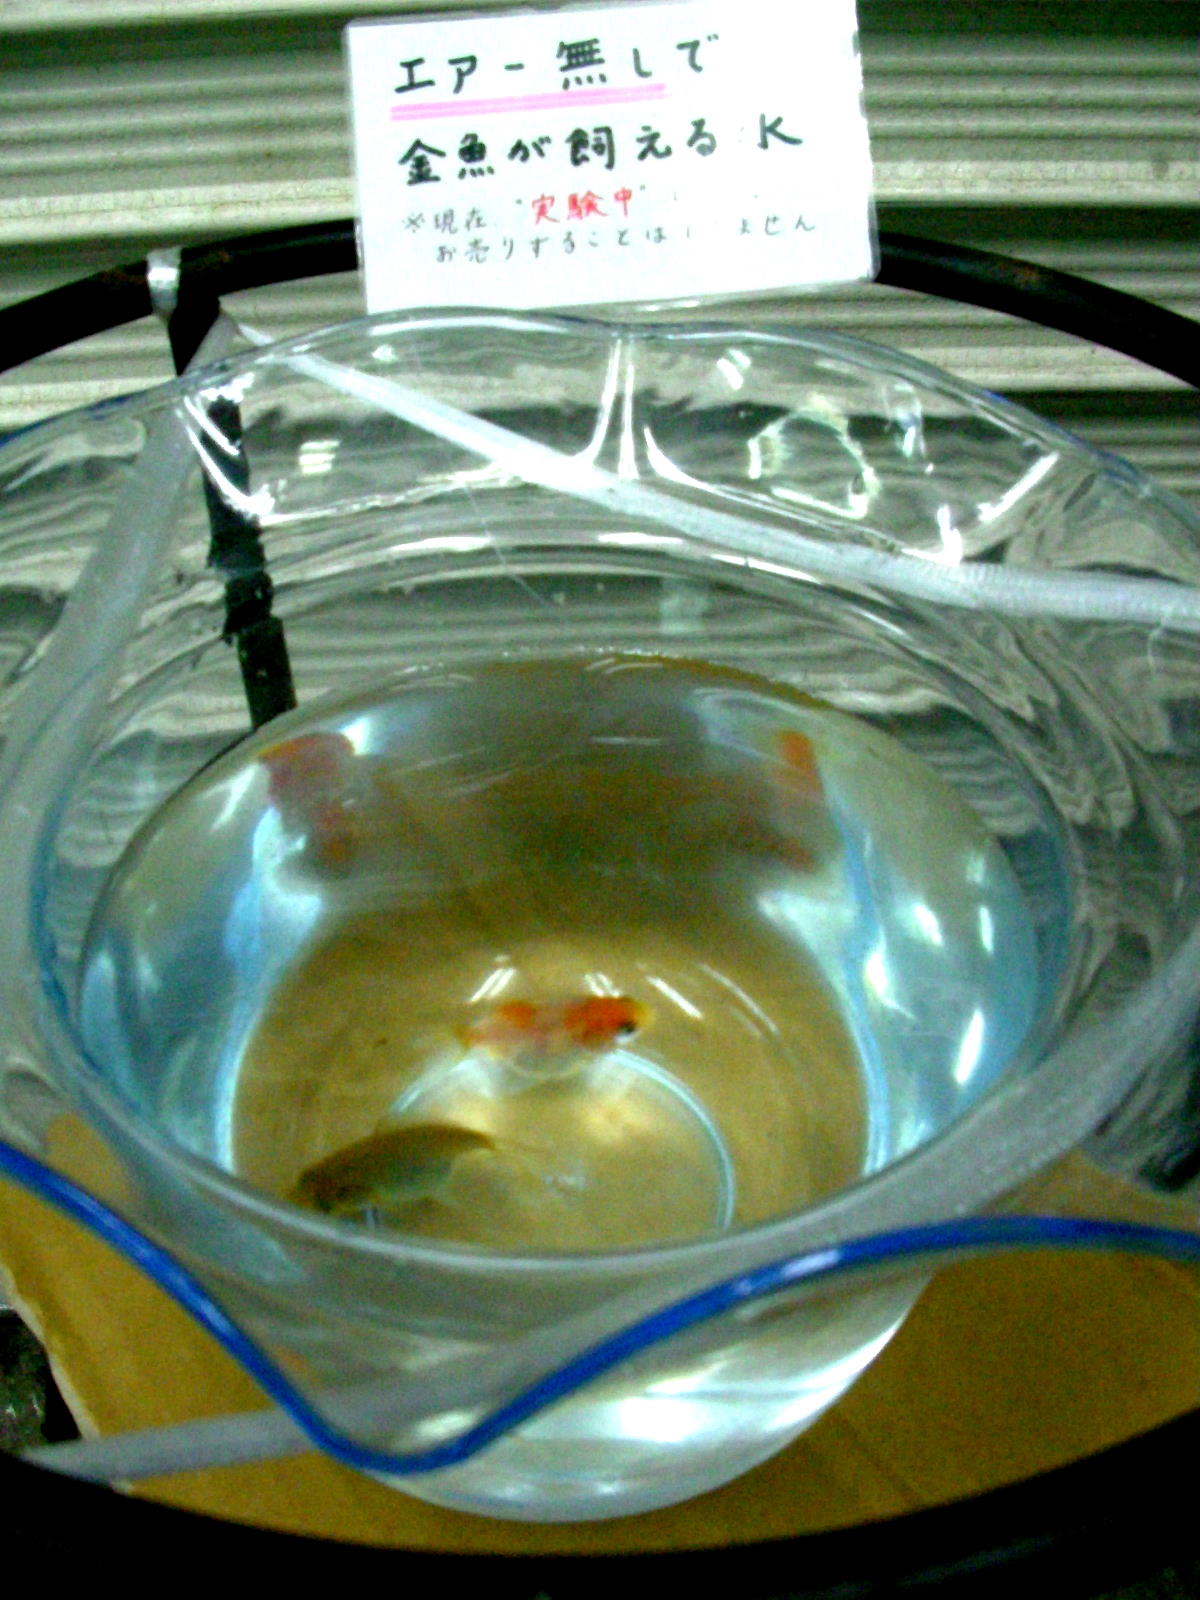 ノン エアレーションで金魚飼育が可能に なる か 金魚一道 スタッフブログ